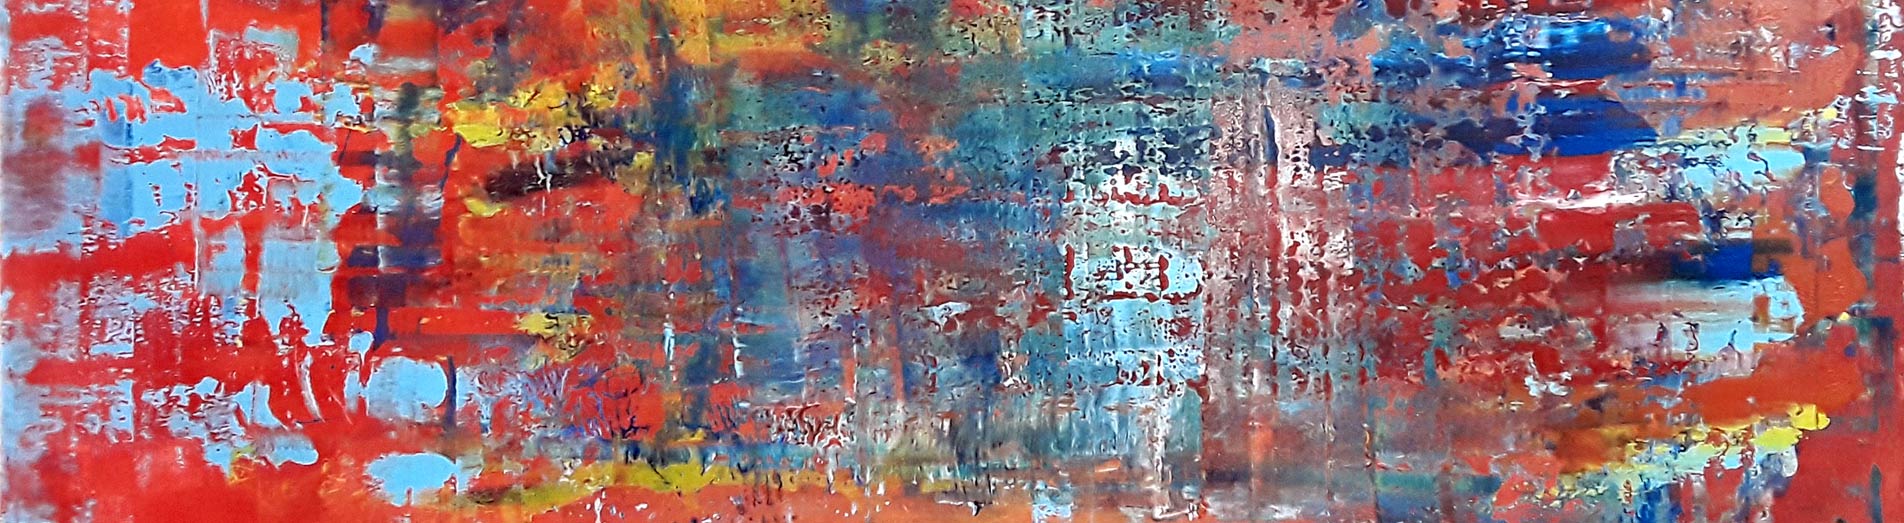 abstract painter Patrick joosten